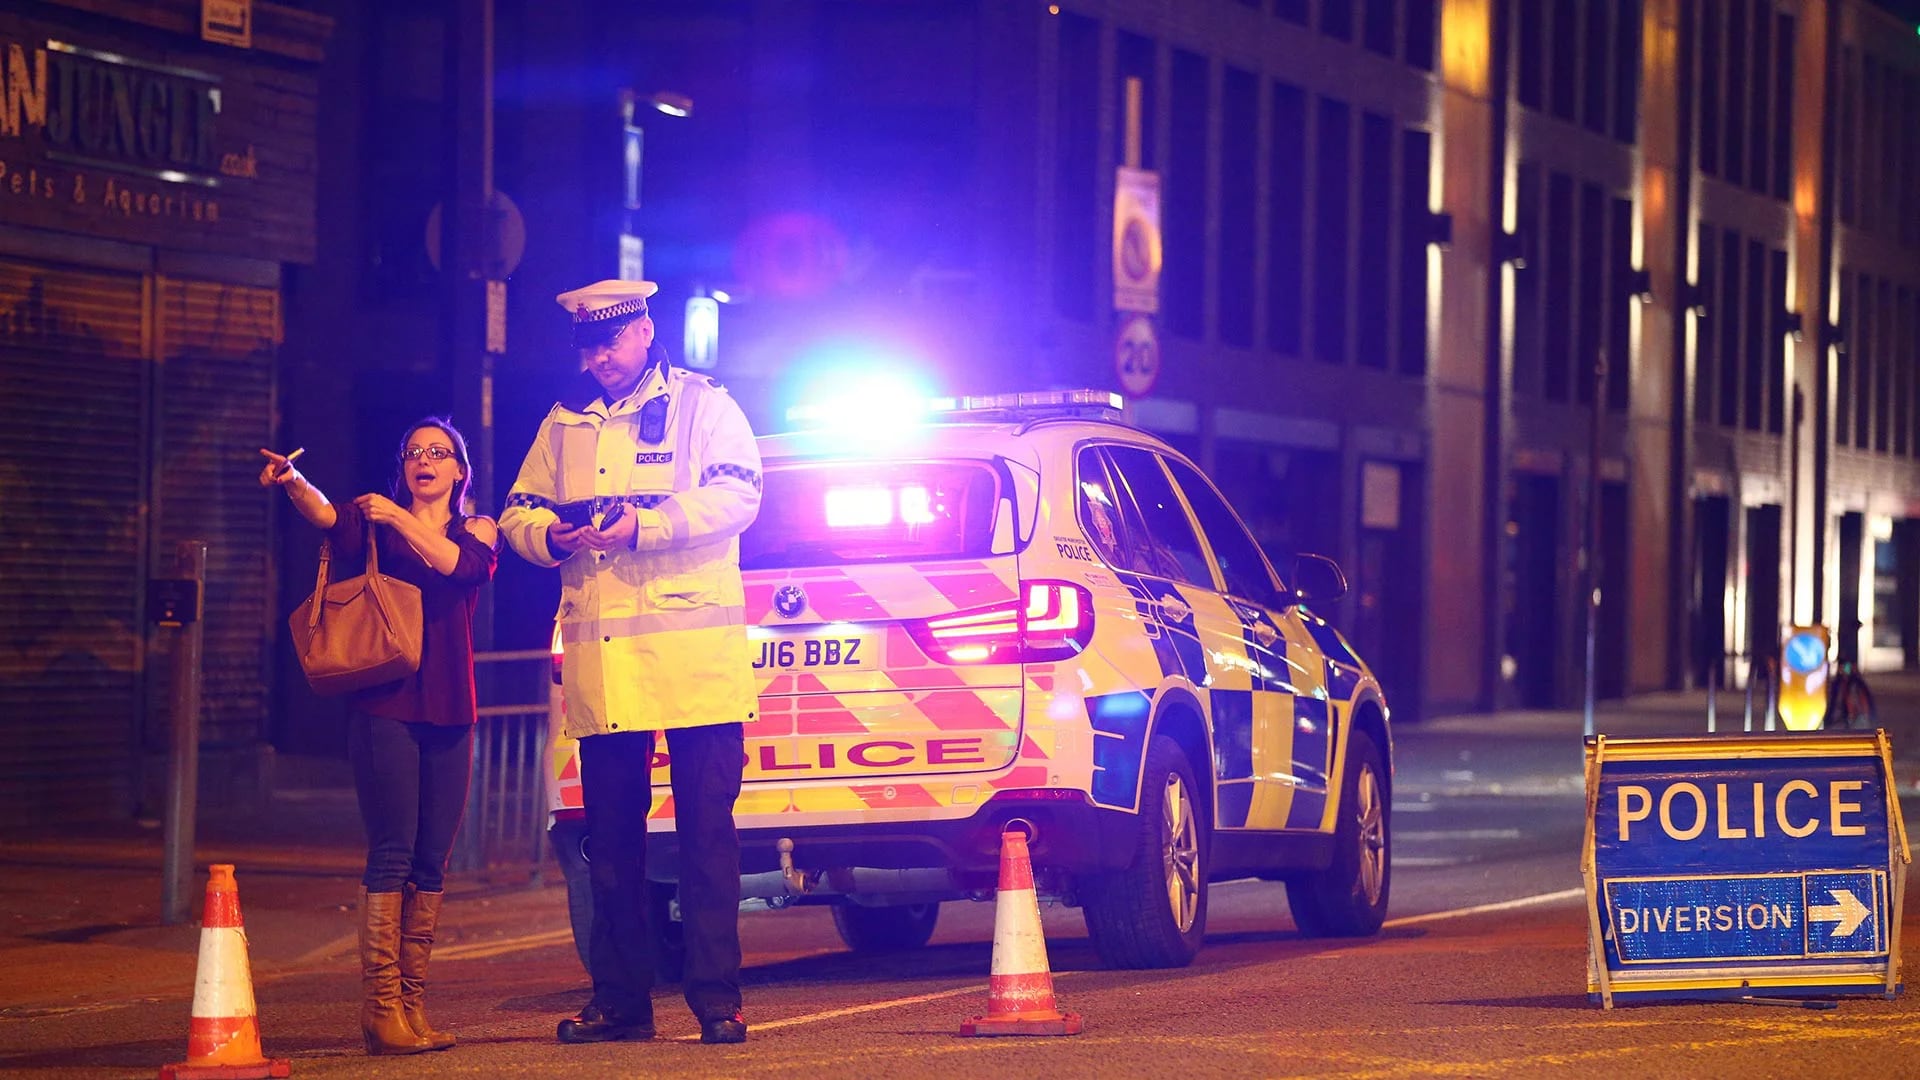 La Policía investiga y trata el hecho como un ataque terrorista (Getty Images)